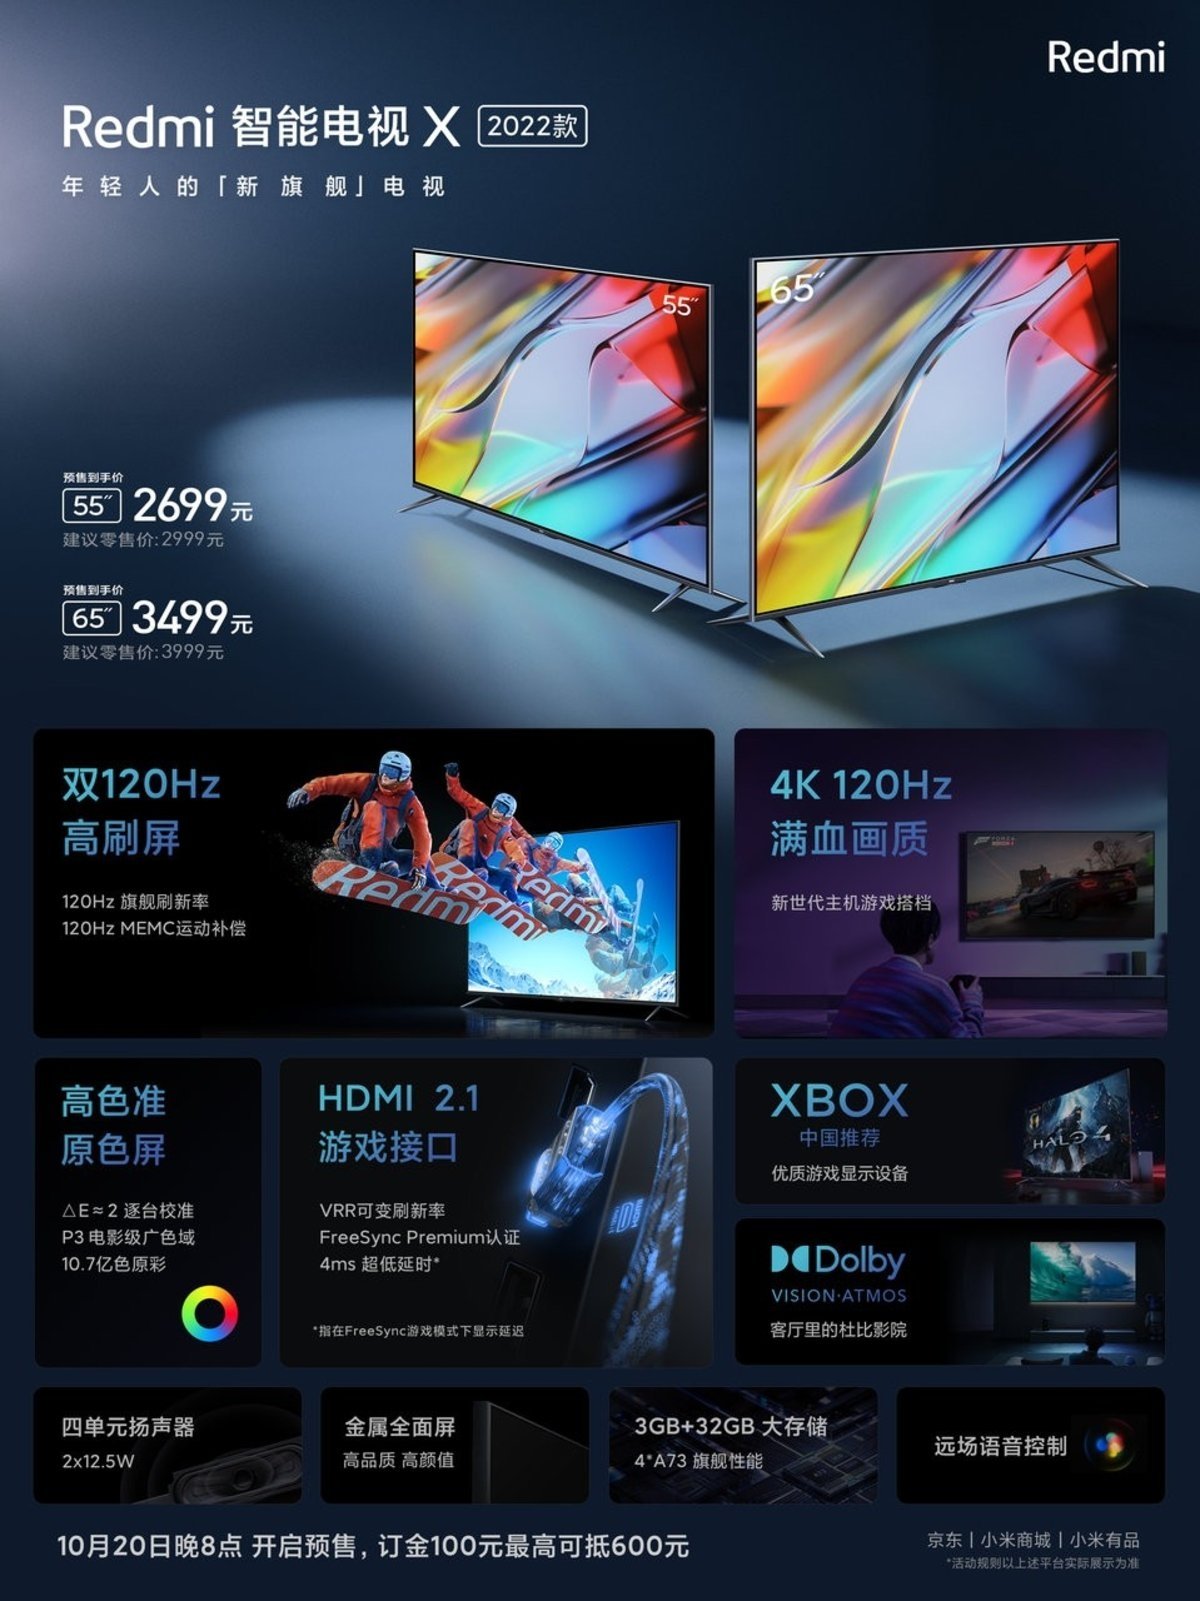 Redmi Smart TV X 2022 55y65 pulgadas-características